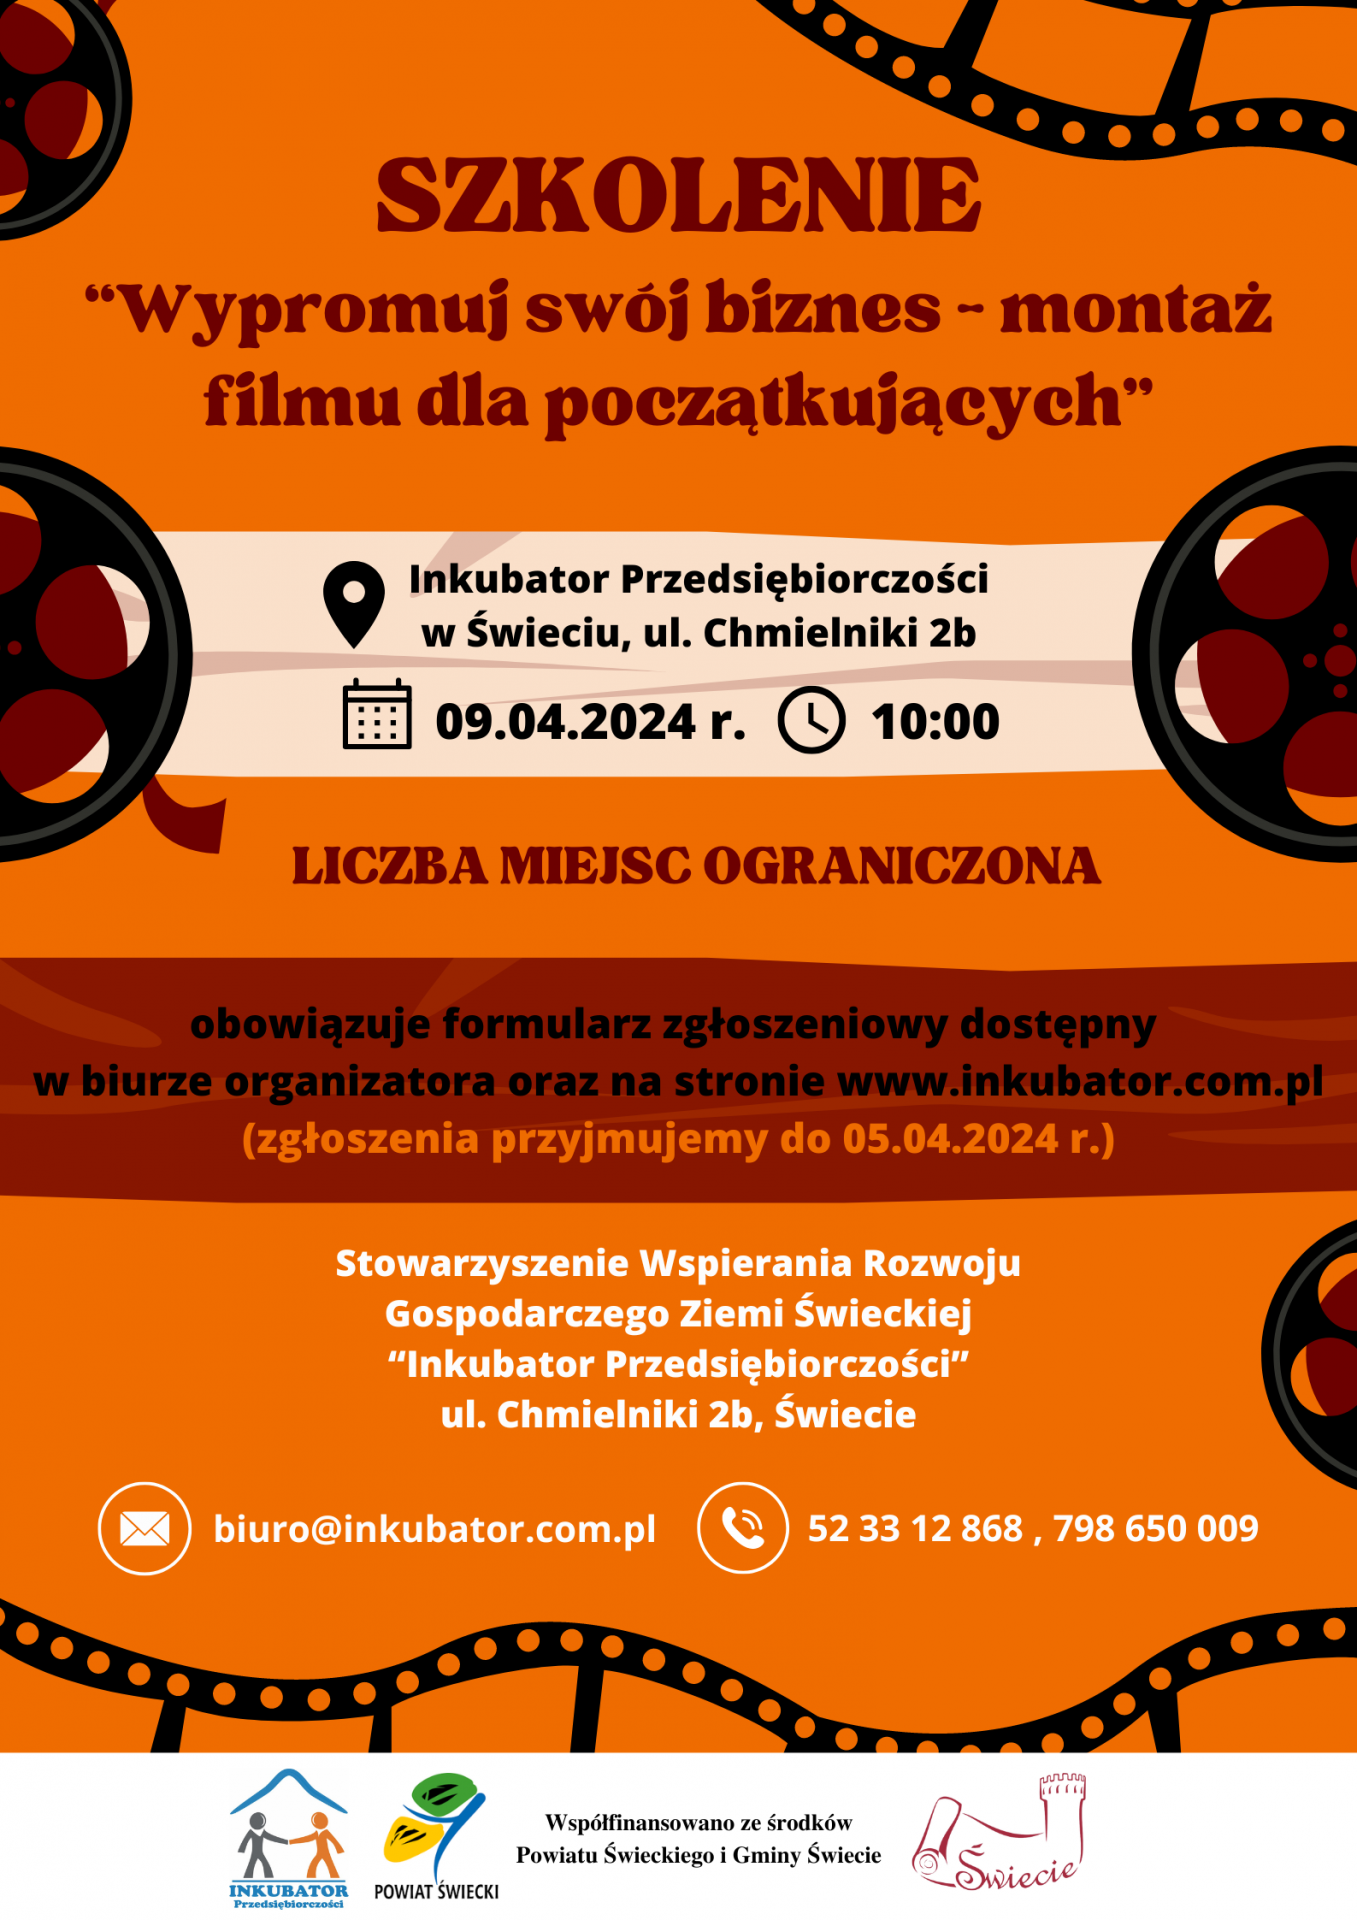 plakat promujący bezpłatne szkolenia pt. "Wypromuj swój biznes - montaż filmu dla początkujących"